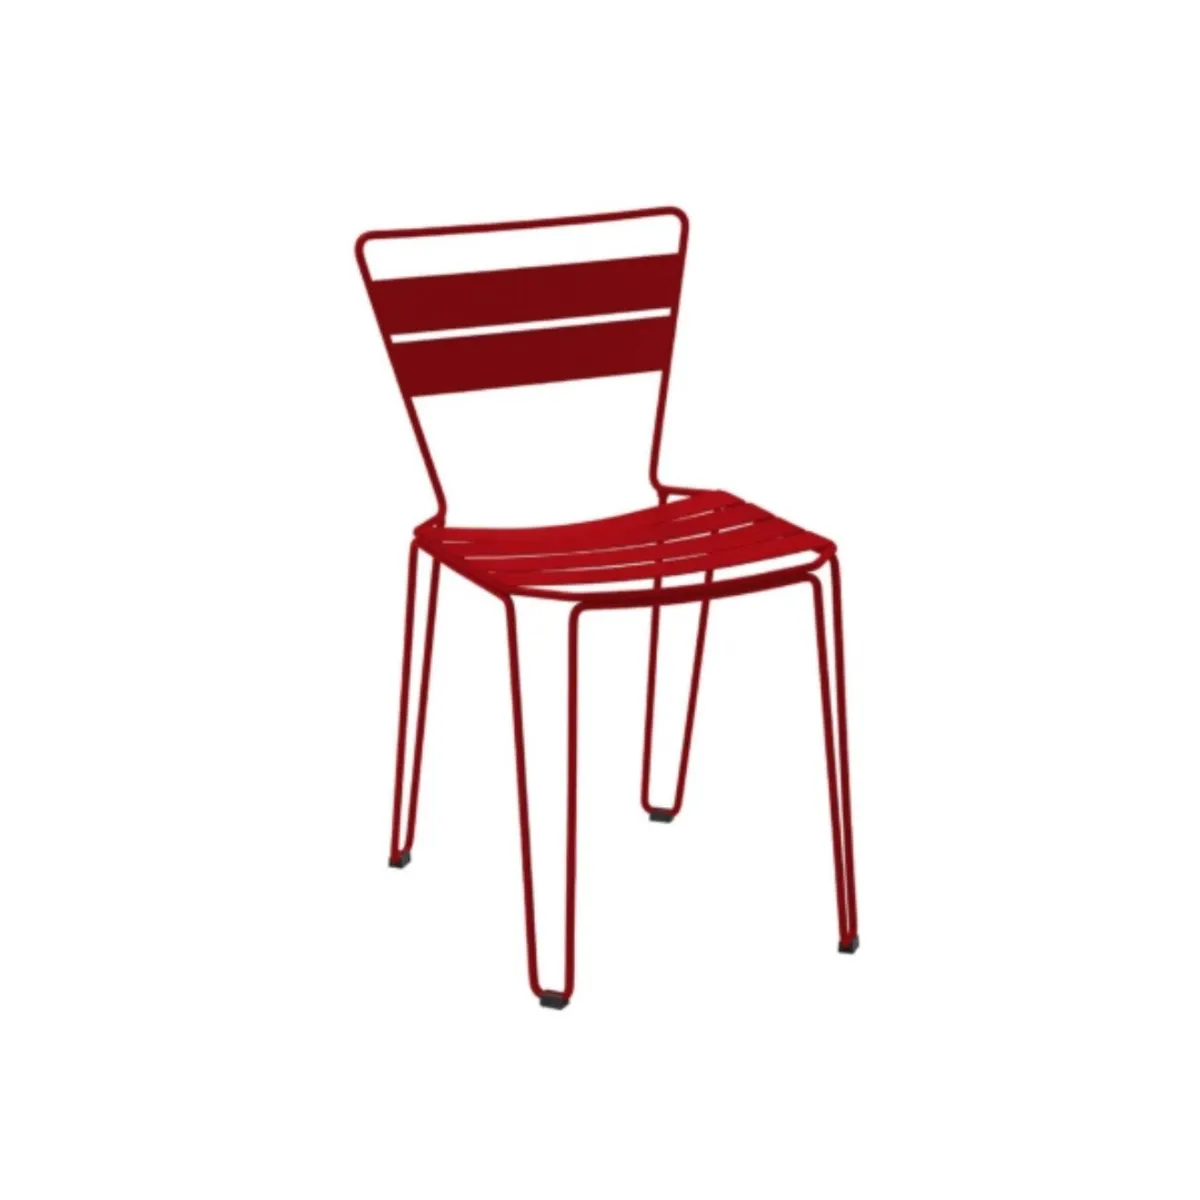 Saura armchair side chair 1